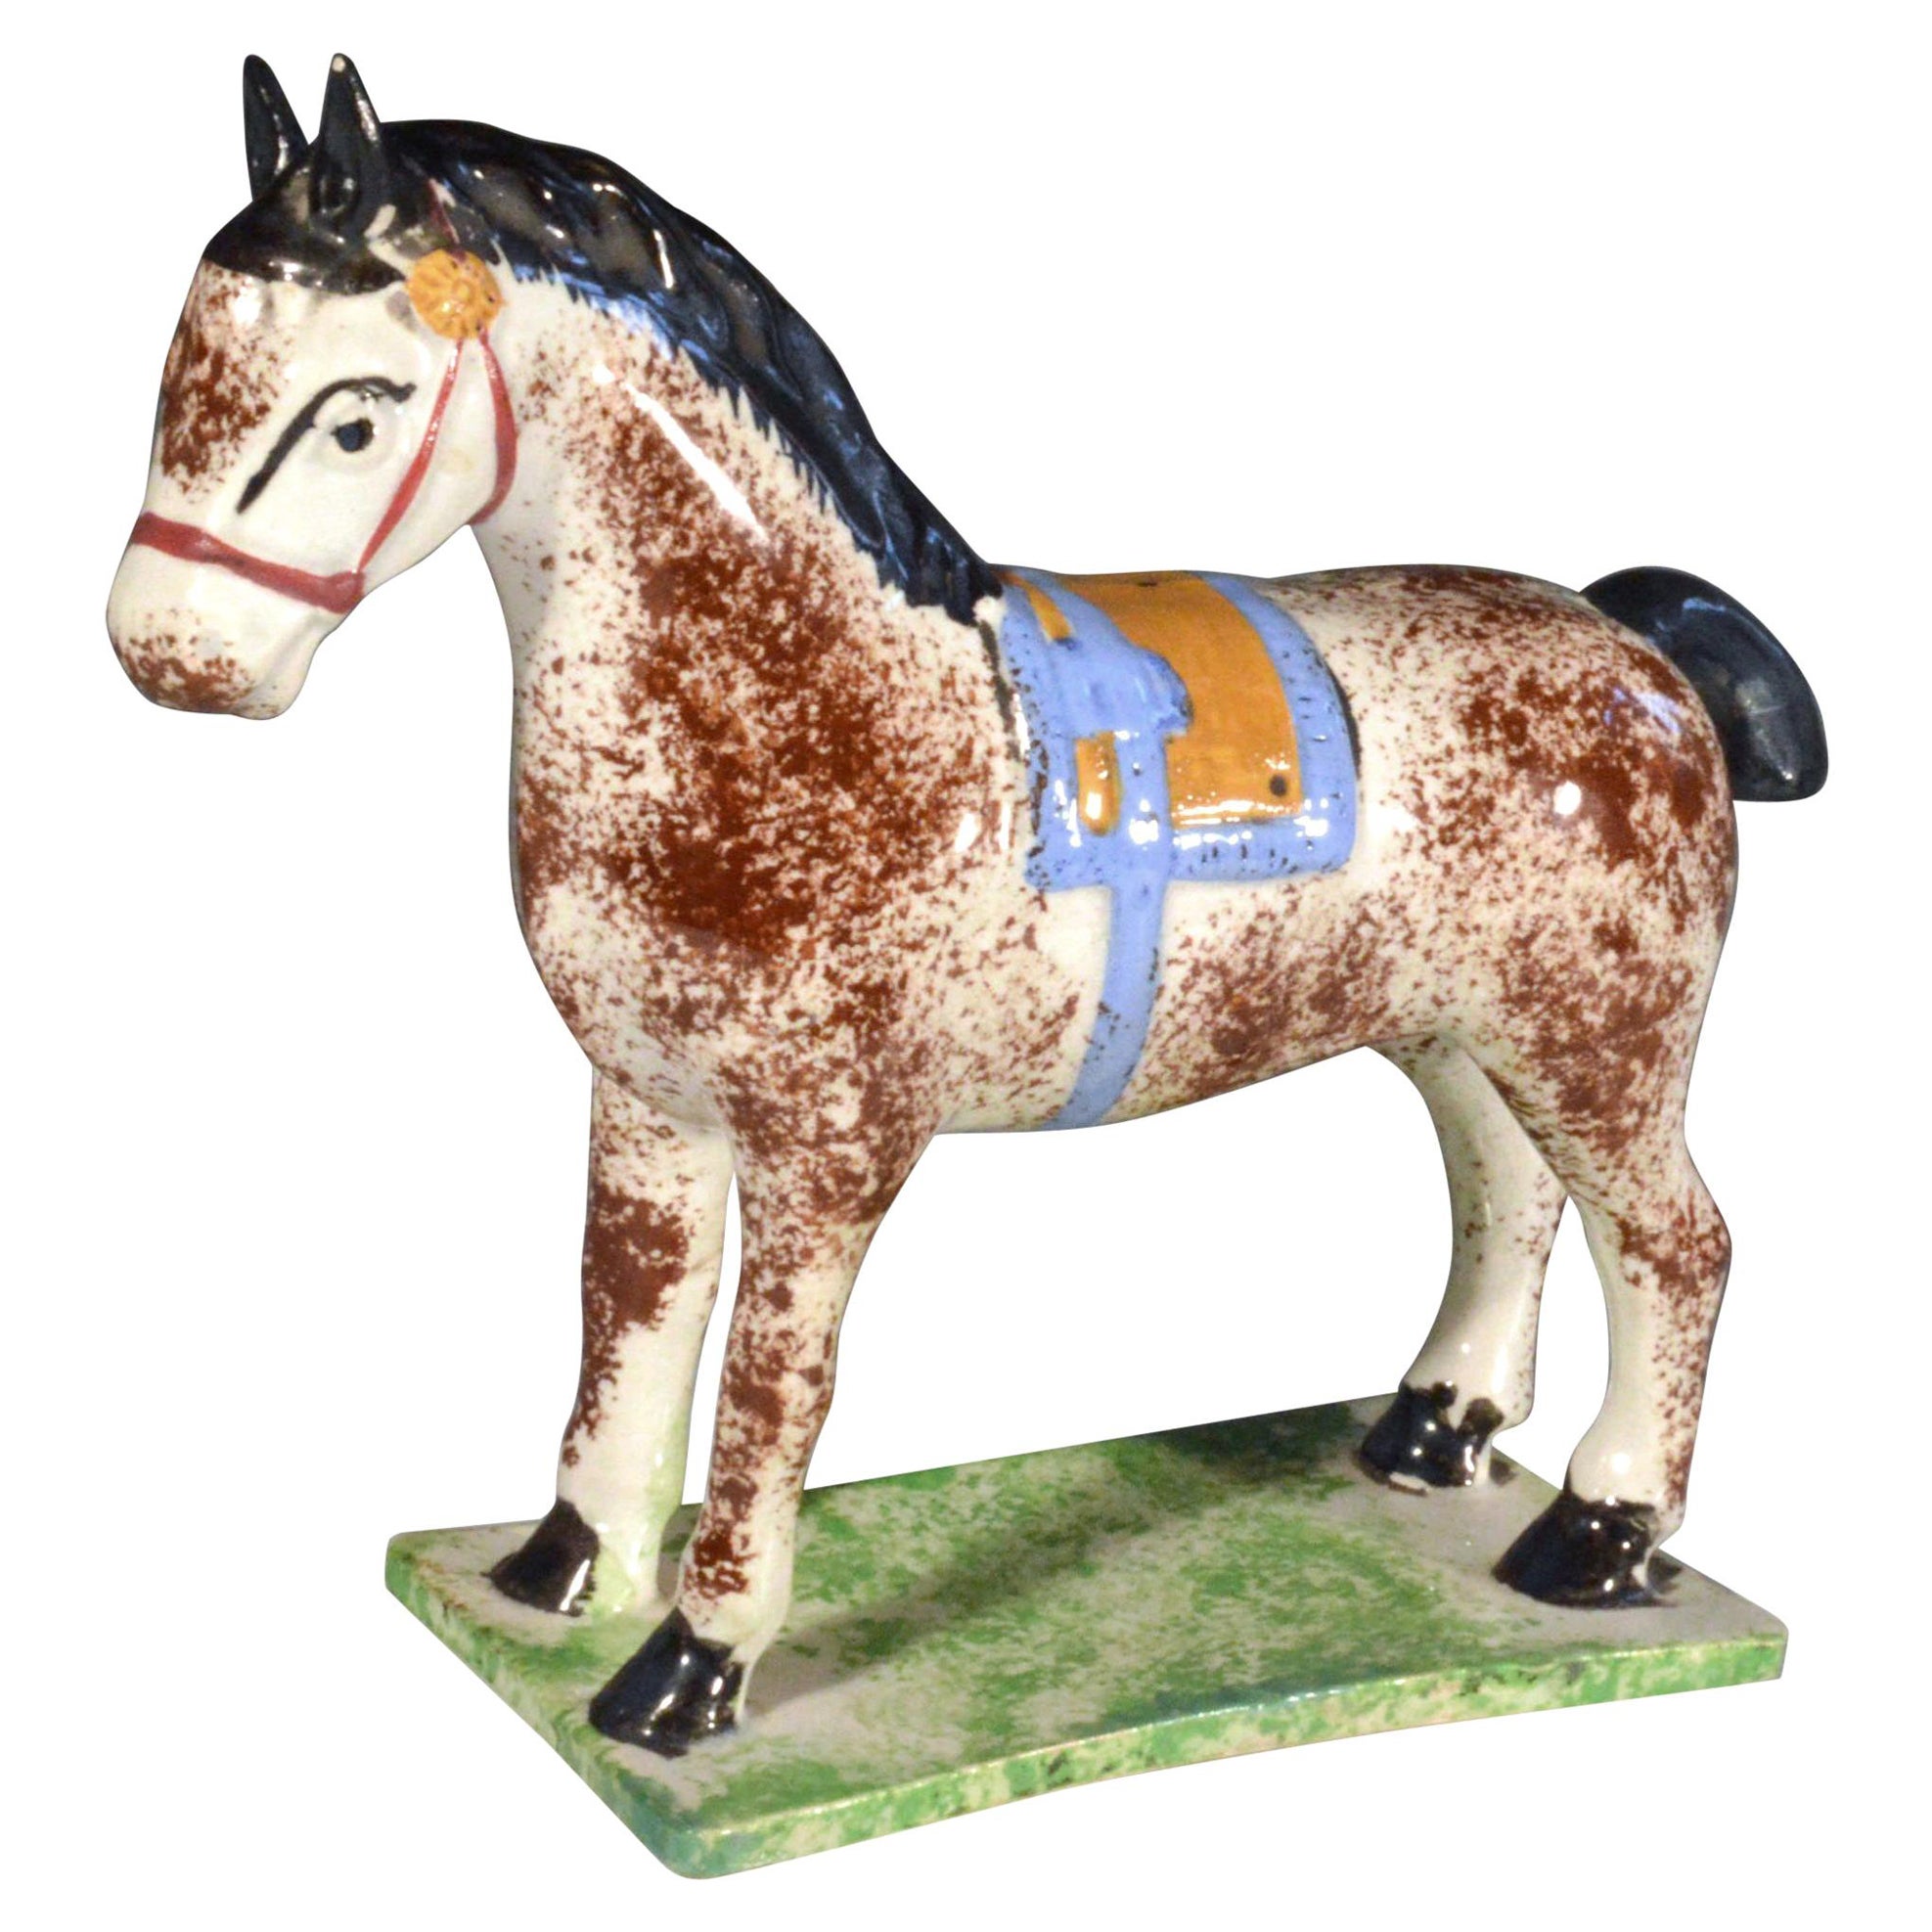 Modèle de cheval en poterie Prattware de Newcastle, attribué à la poterie St. Anthony en vente